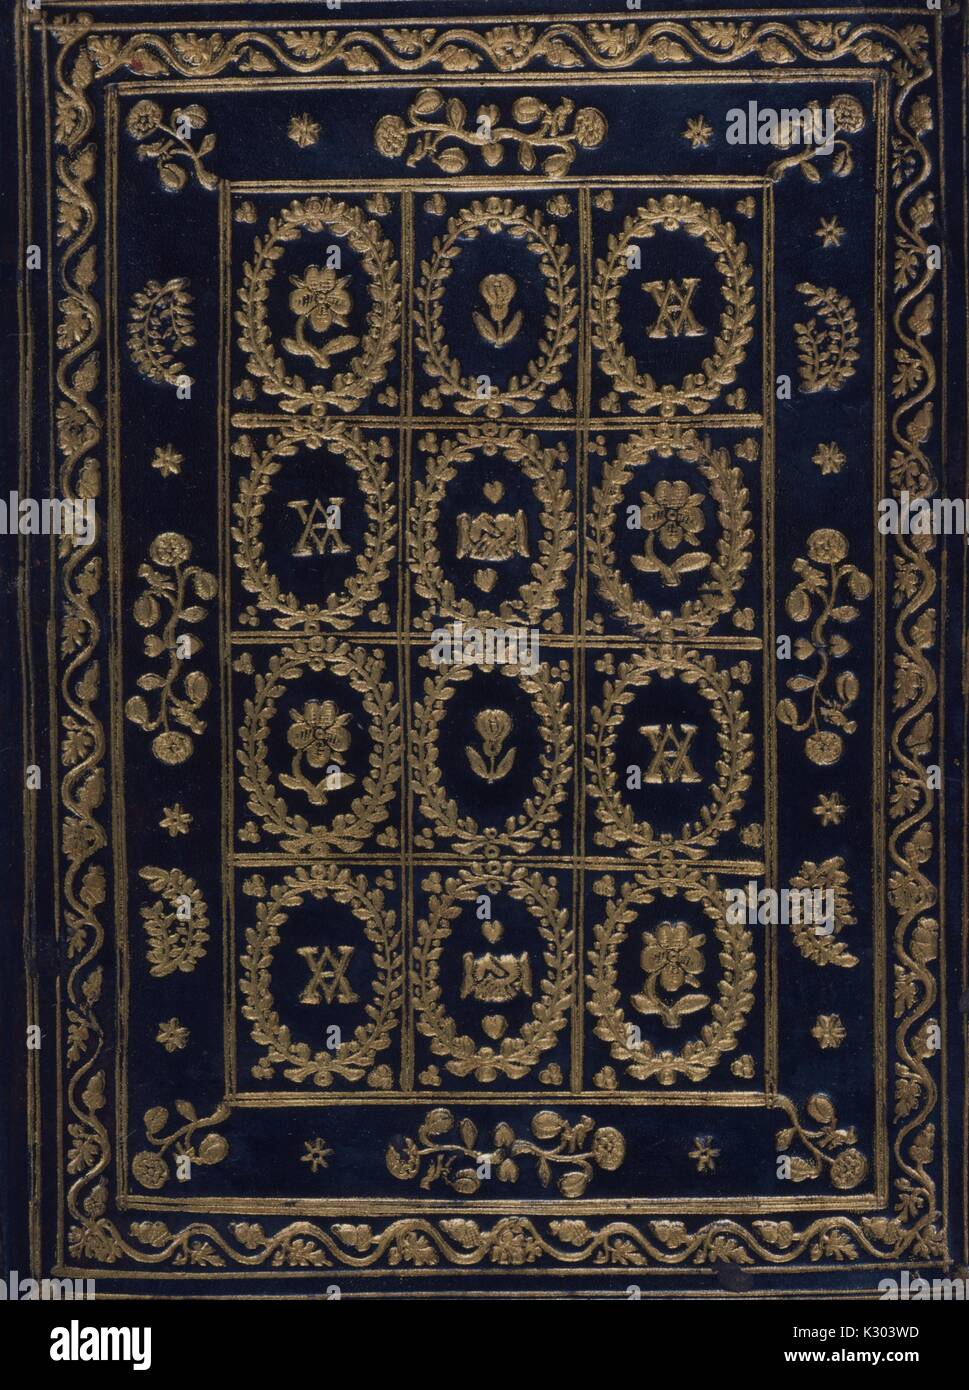 Lié finement couvert d'un livre d'heures du xve siècle au début de l'Amérique, 1450. Banque D'Images